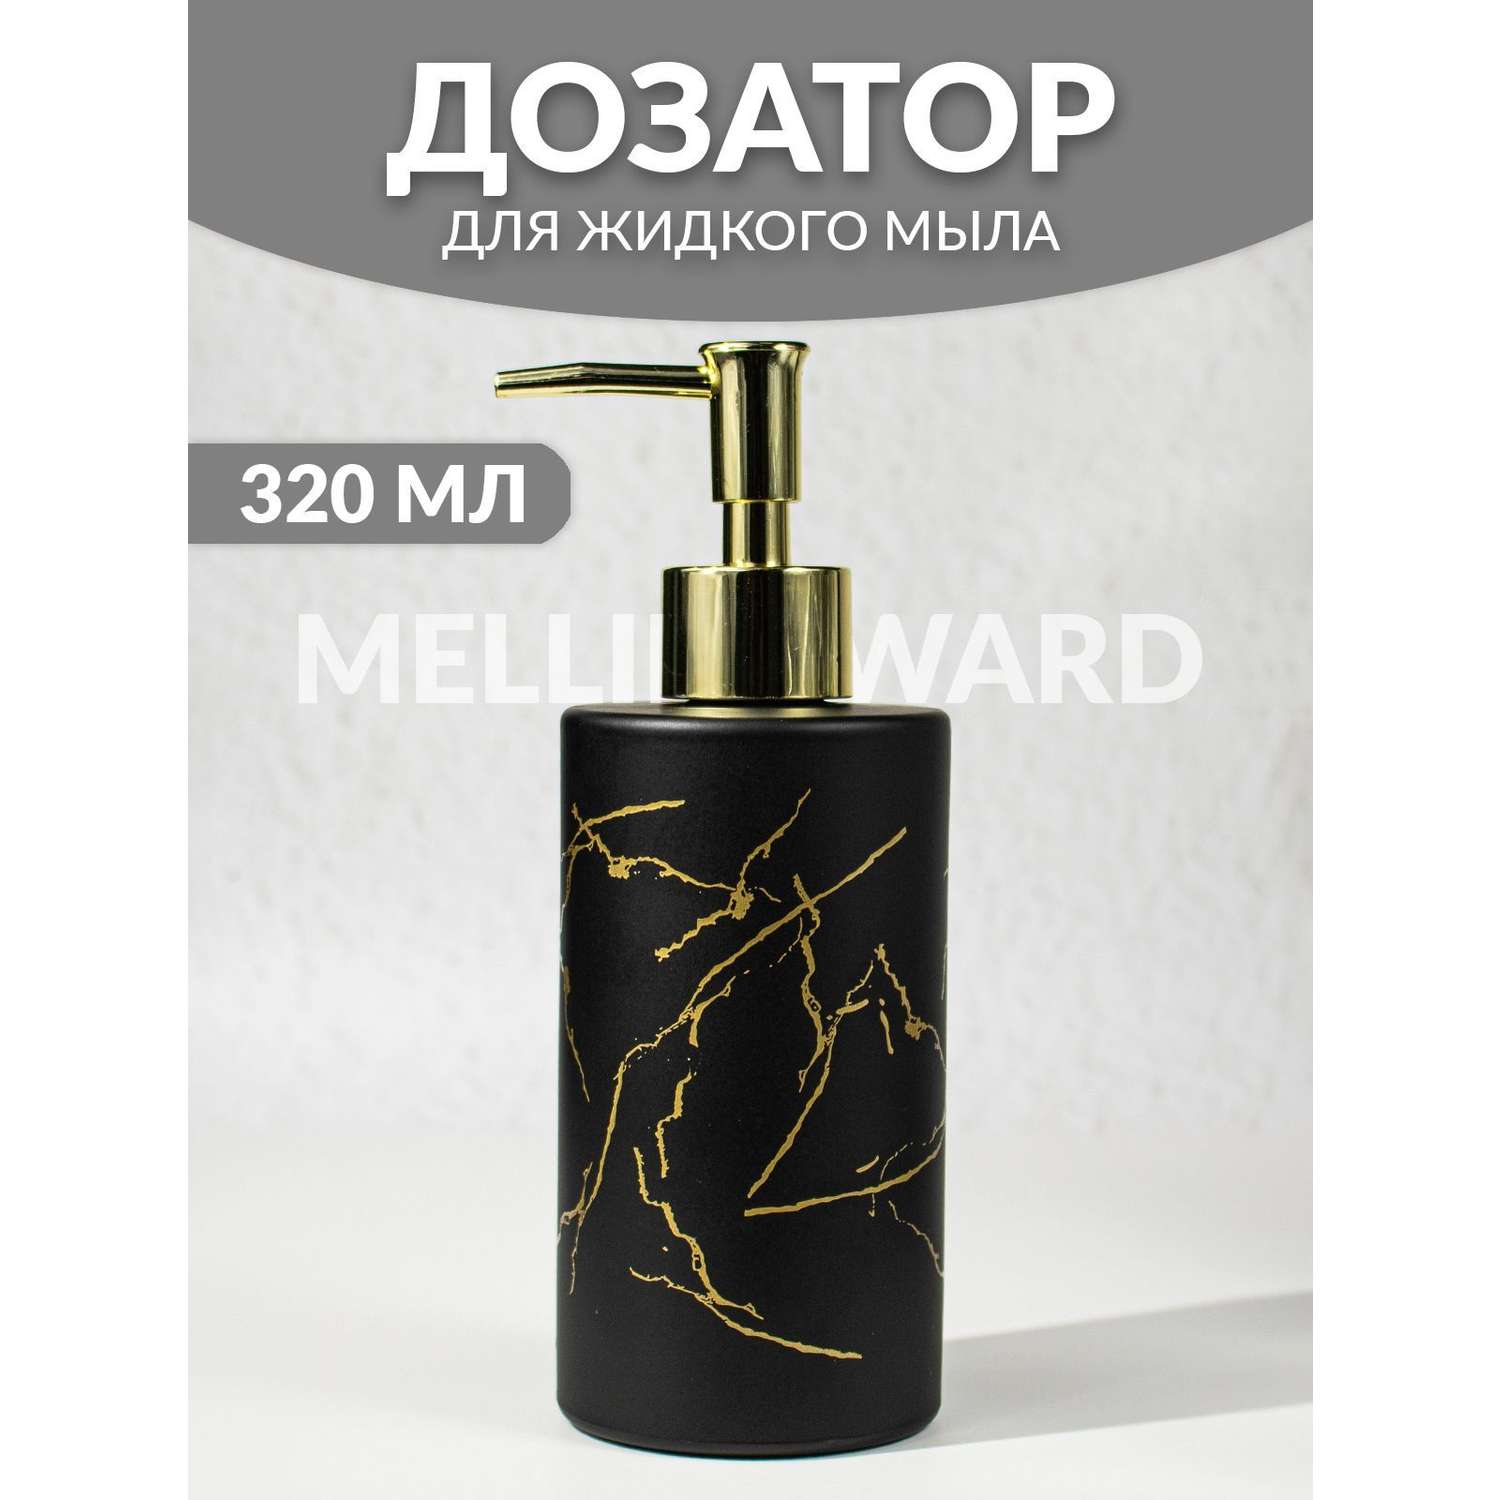 Дозатор для мыла Mellingward IMP0351 - фото 1